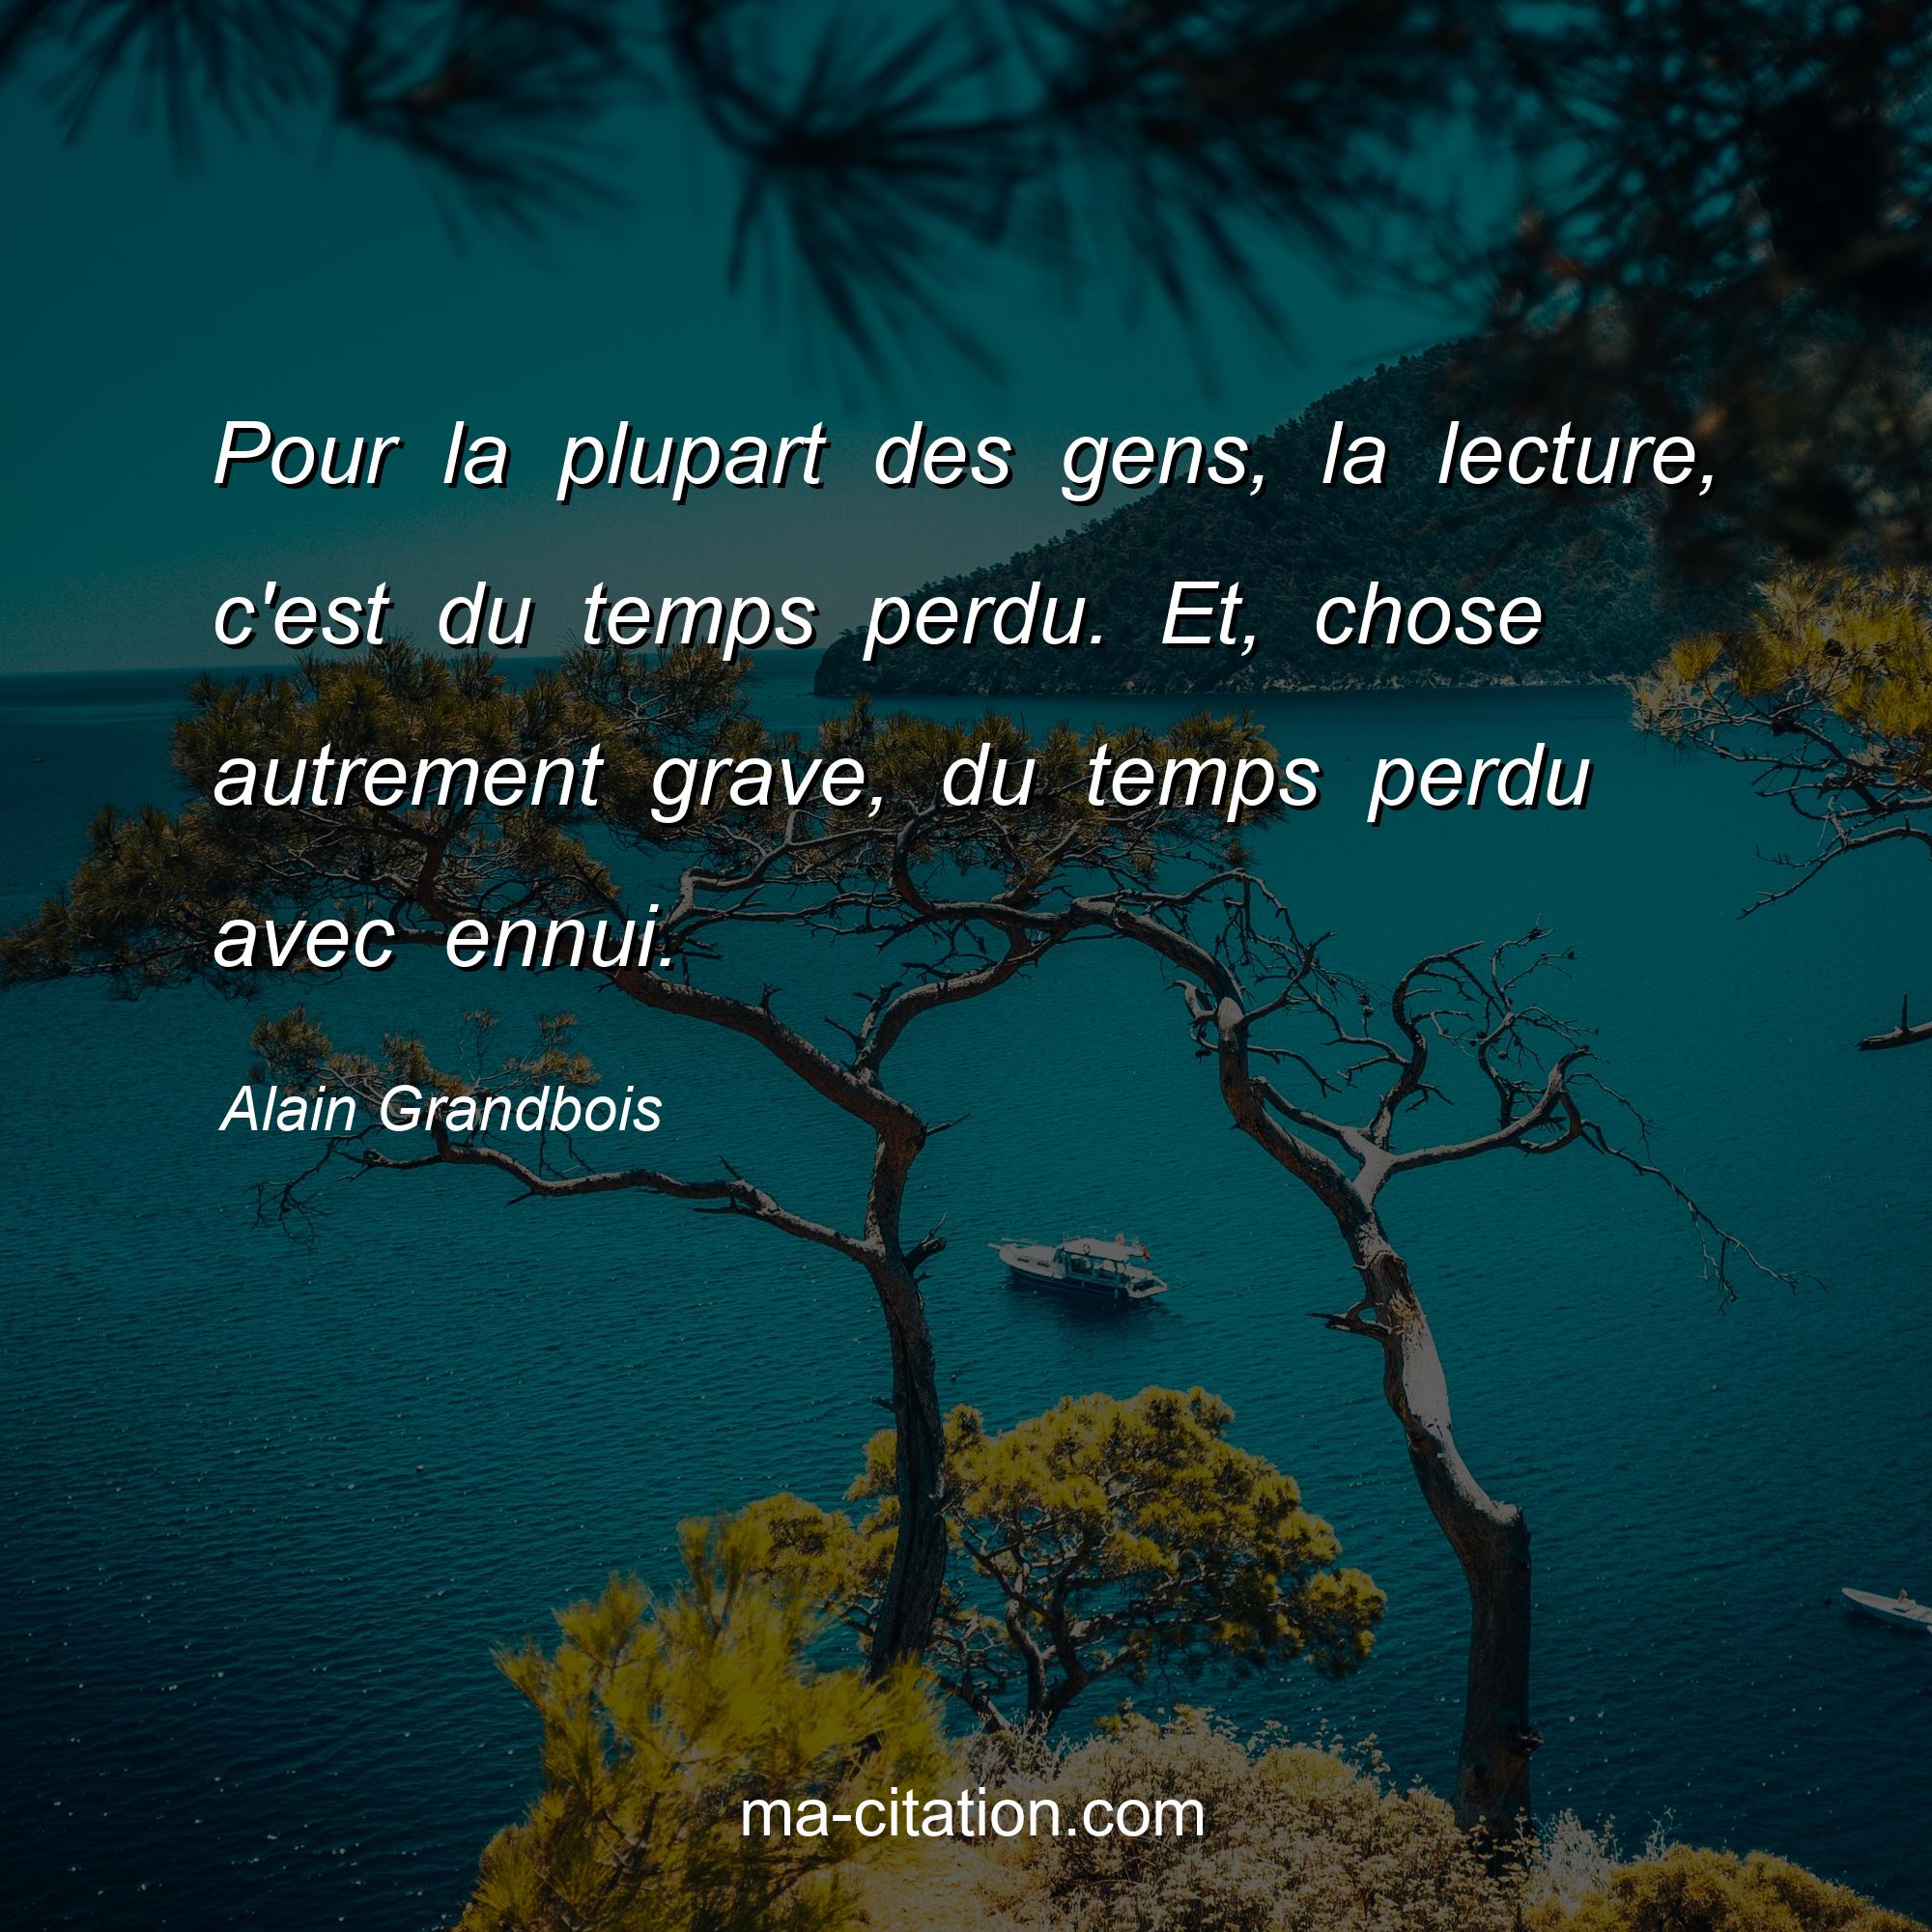 Alain Grandbois : Pour la plupart des gens, la lecture, c'est du temps perdu. Et, chose autrement grave, du temps perdu avec ennui.